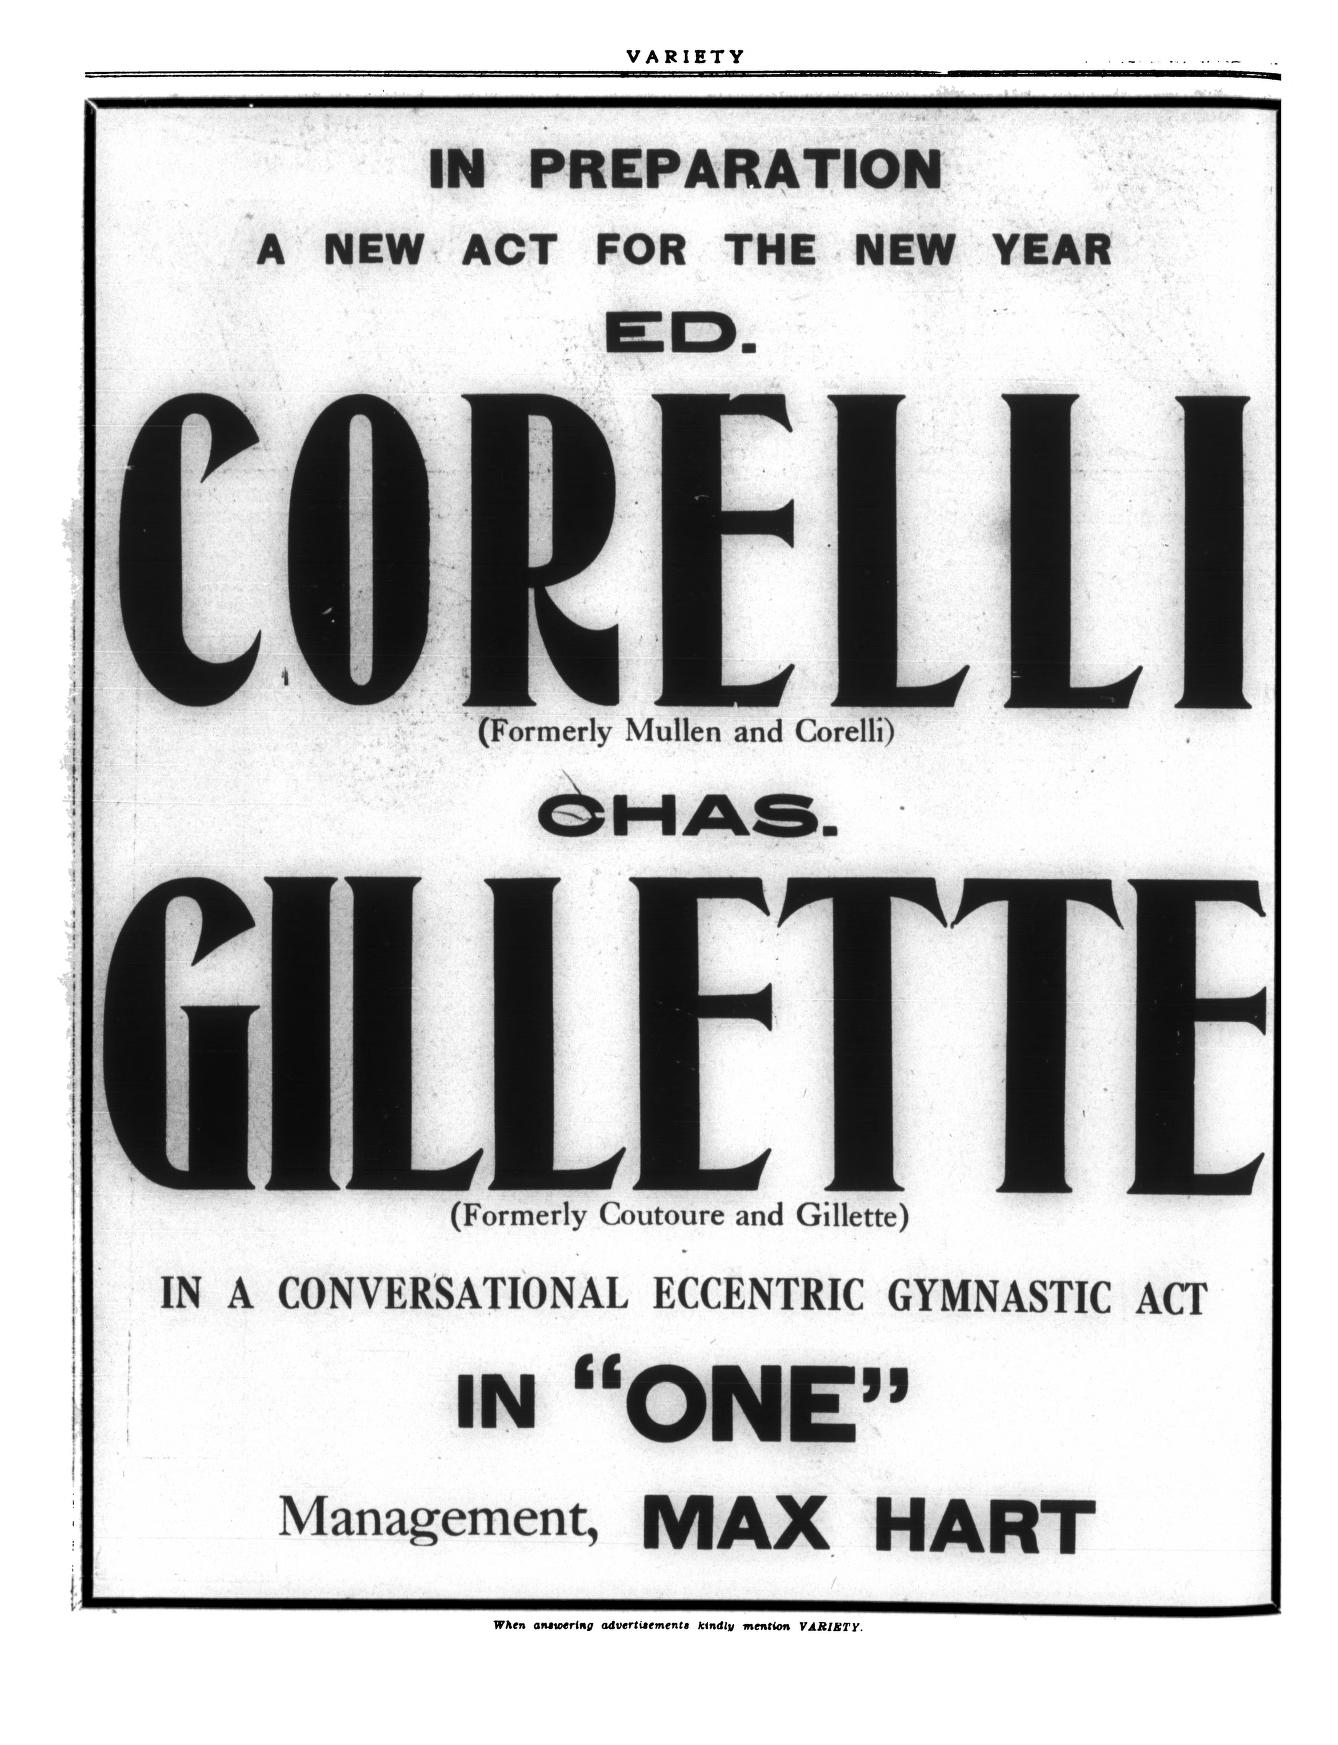 Variety (January 1912)